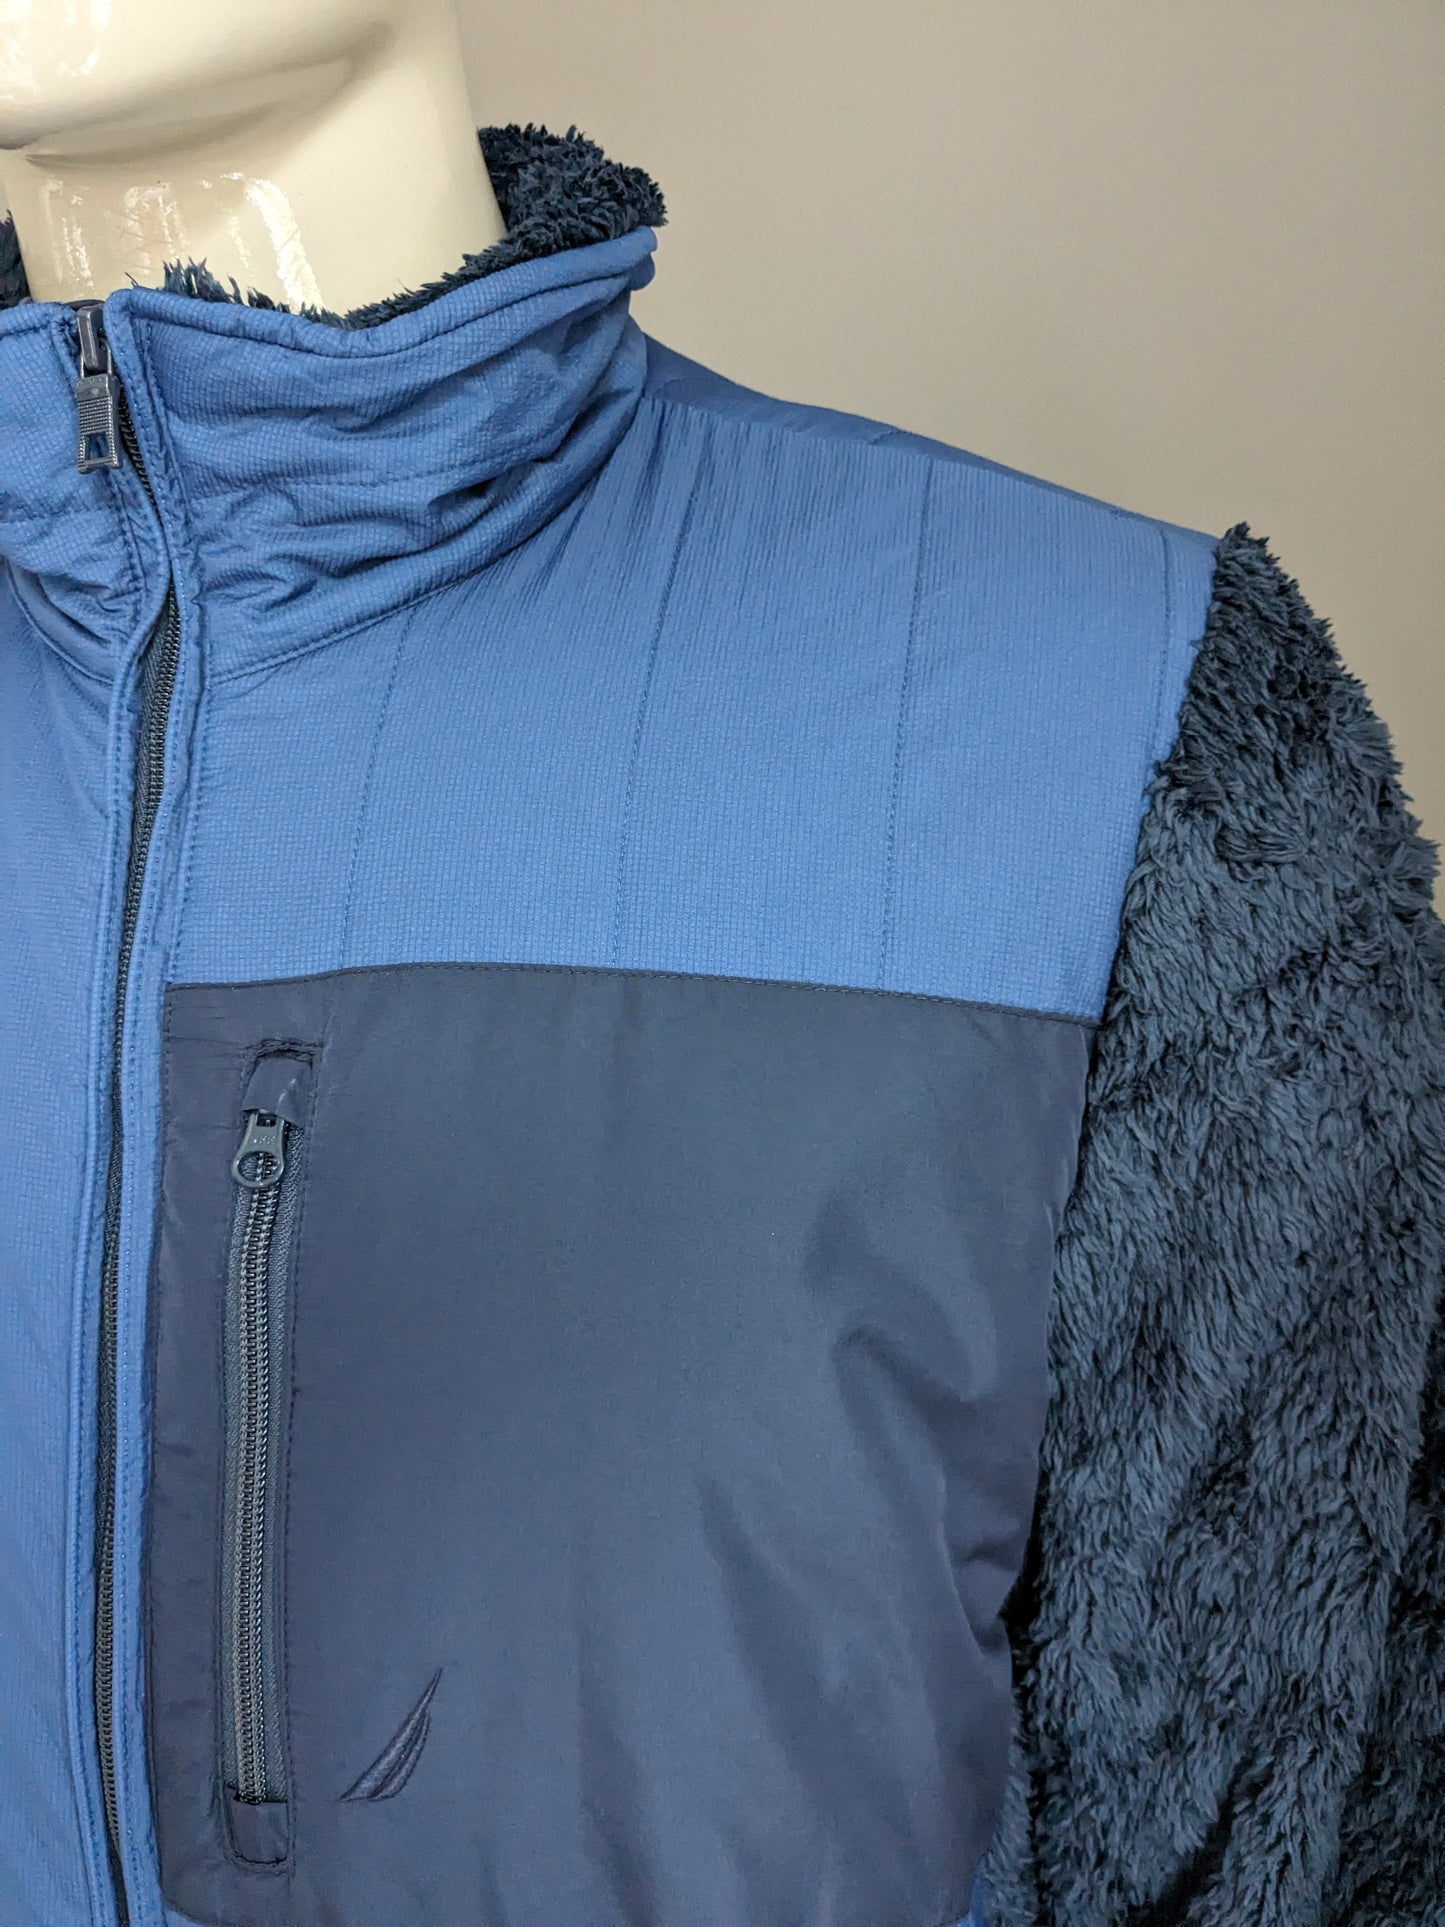 Giacca / giacca invernale foderata di Nautica. Colorato blu scuro. Taglia L.